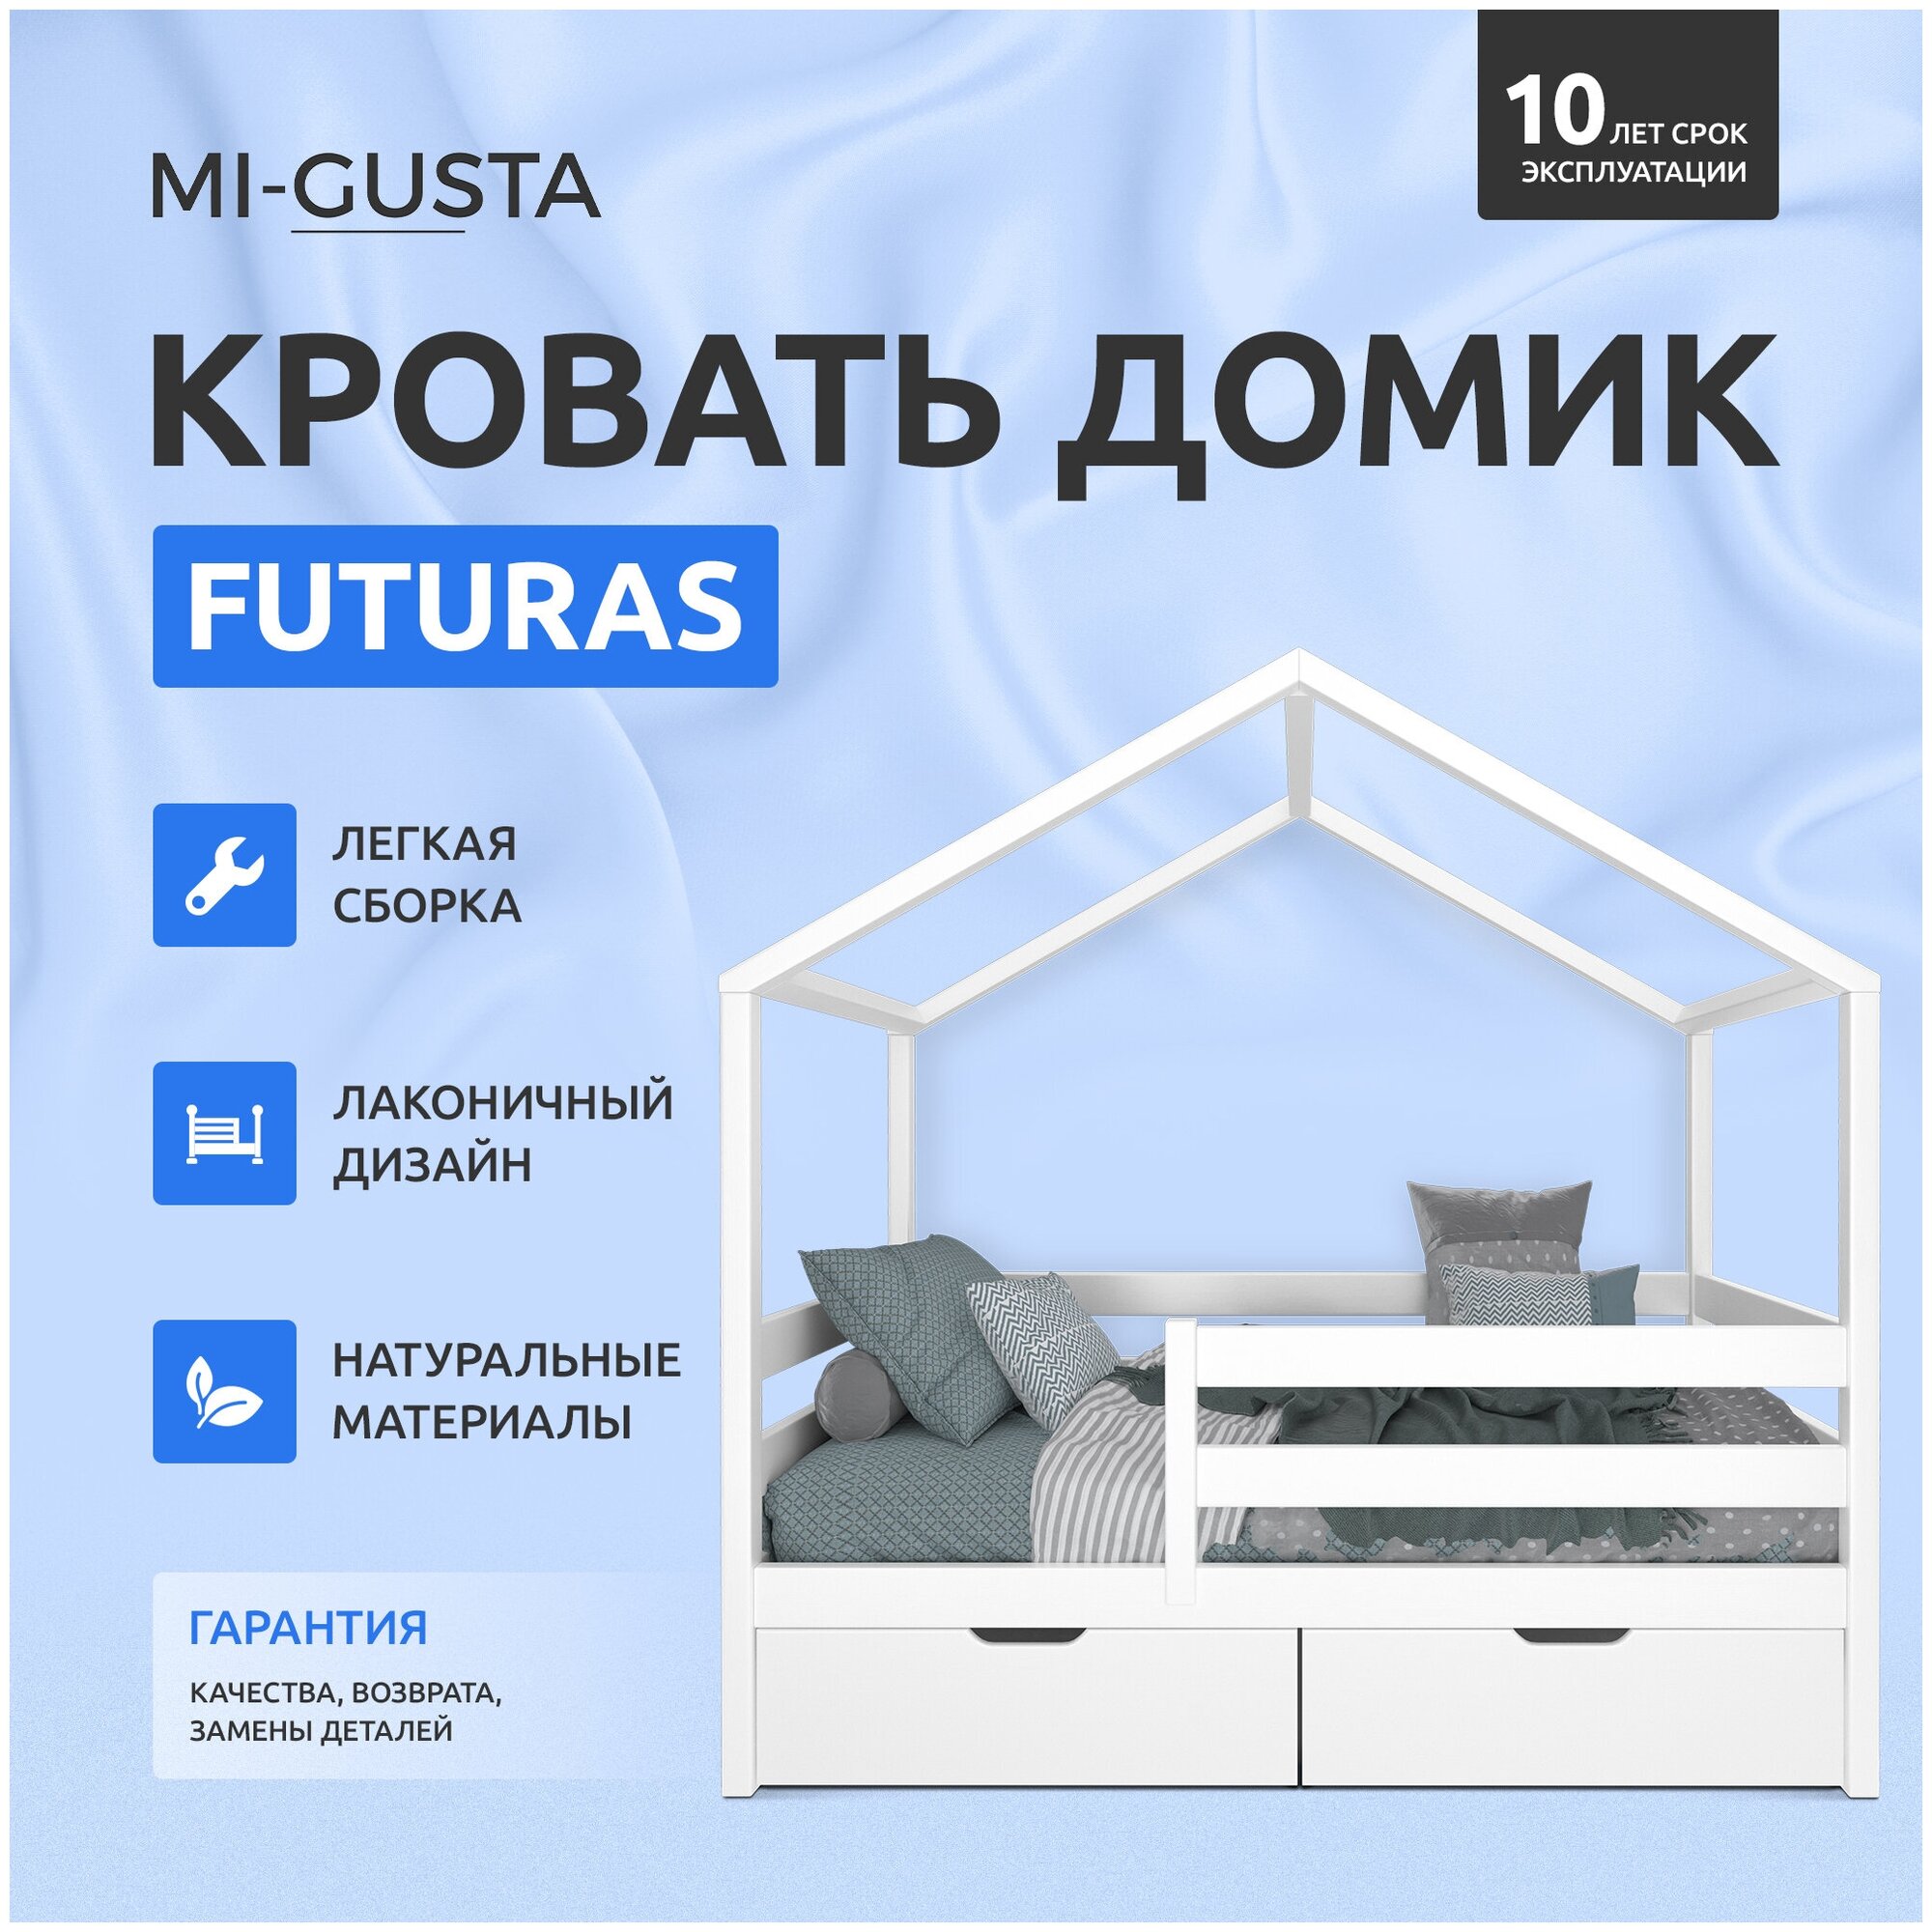 Детская односпальная кровать домик Mi-Gusta Futuras, 160x80 см, из массива берёзы, белая